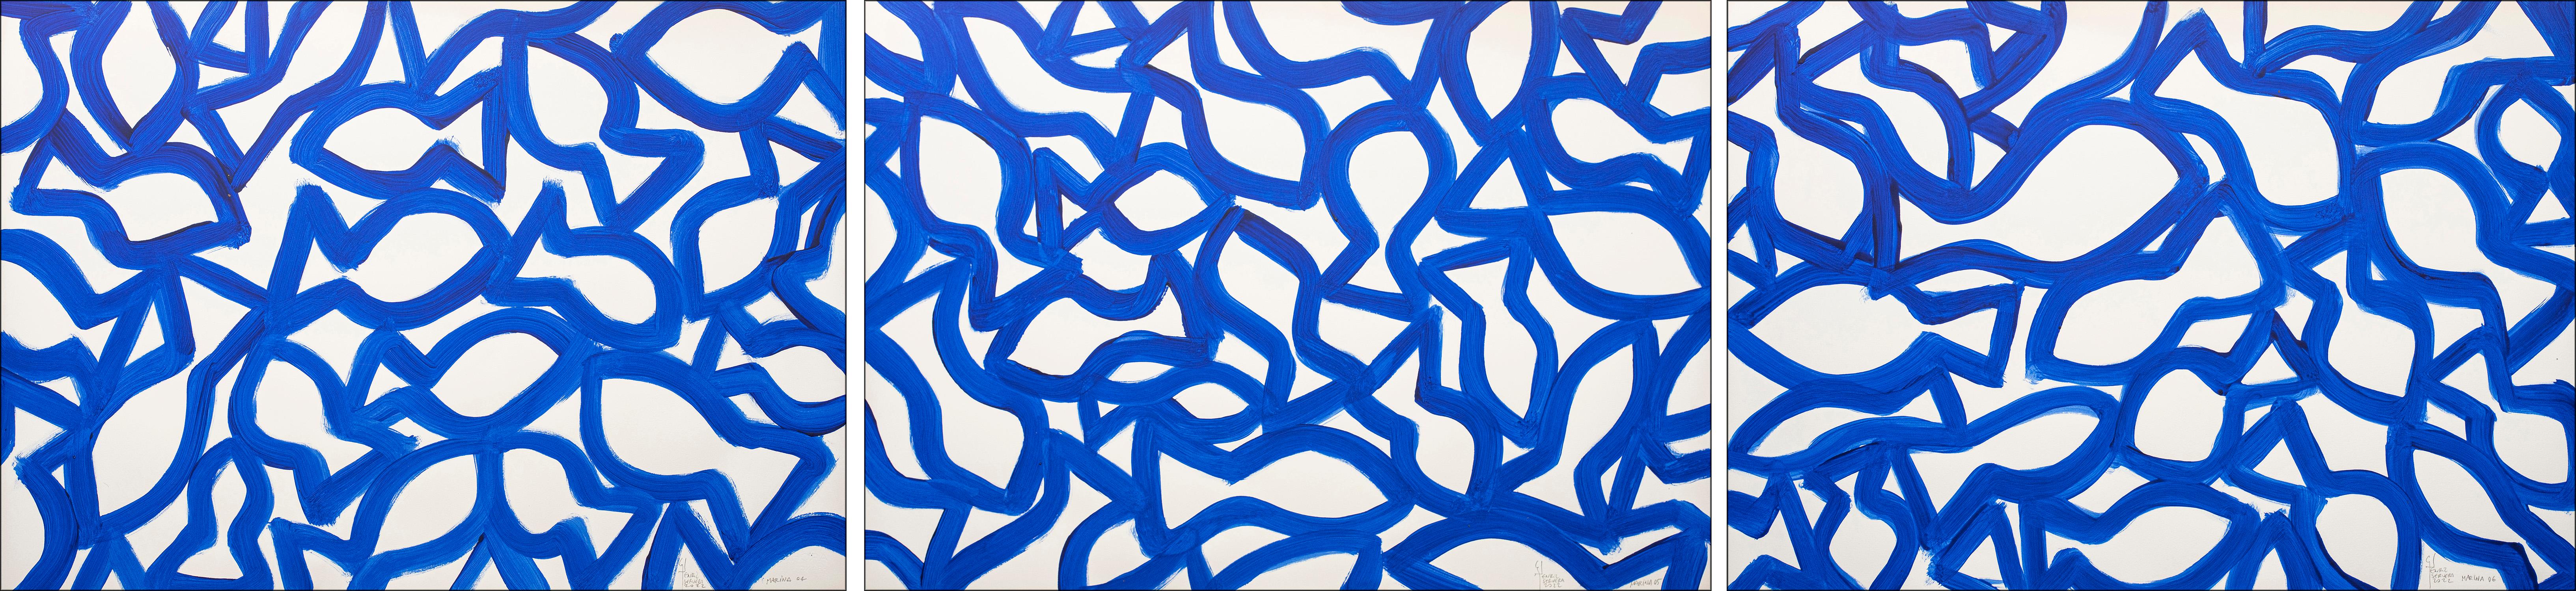 Enric Servera Abstract Painting – Marina Triptychon, Abstrakte Fischformen auf Papier, mediterranes blau-weißes Muster